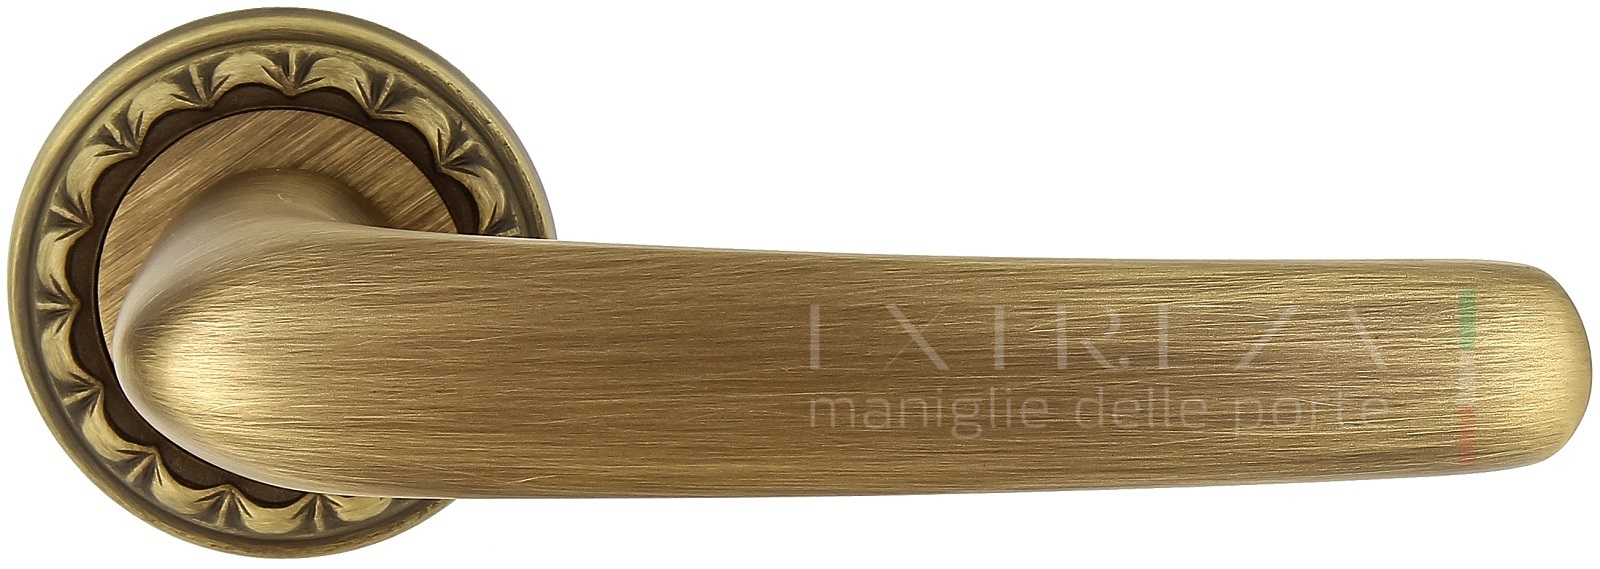 Ручка дверная Extreza MONACO (Монако) 330 на розетке R02 матовая бронза F03